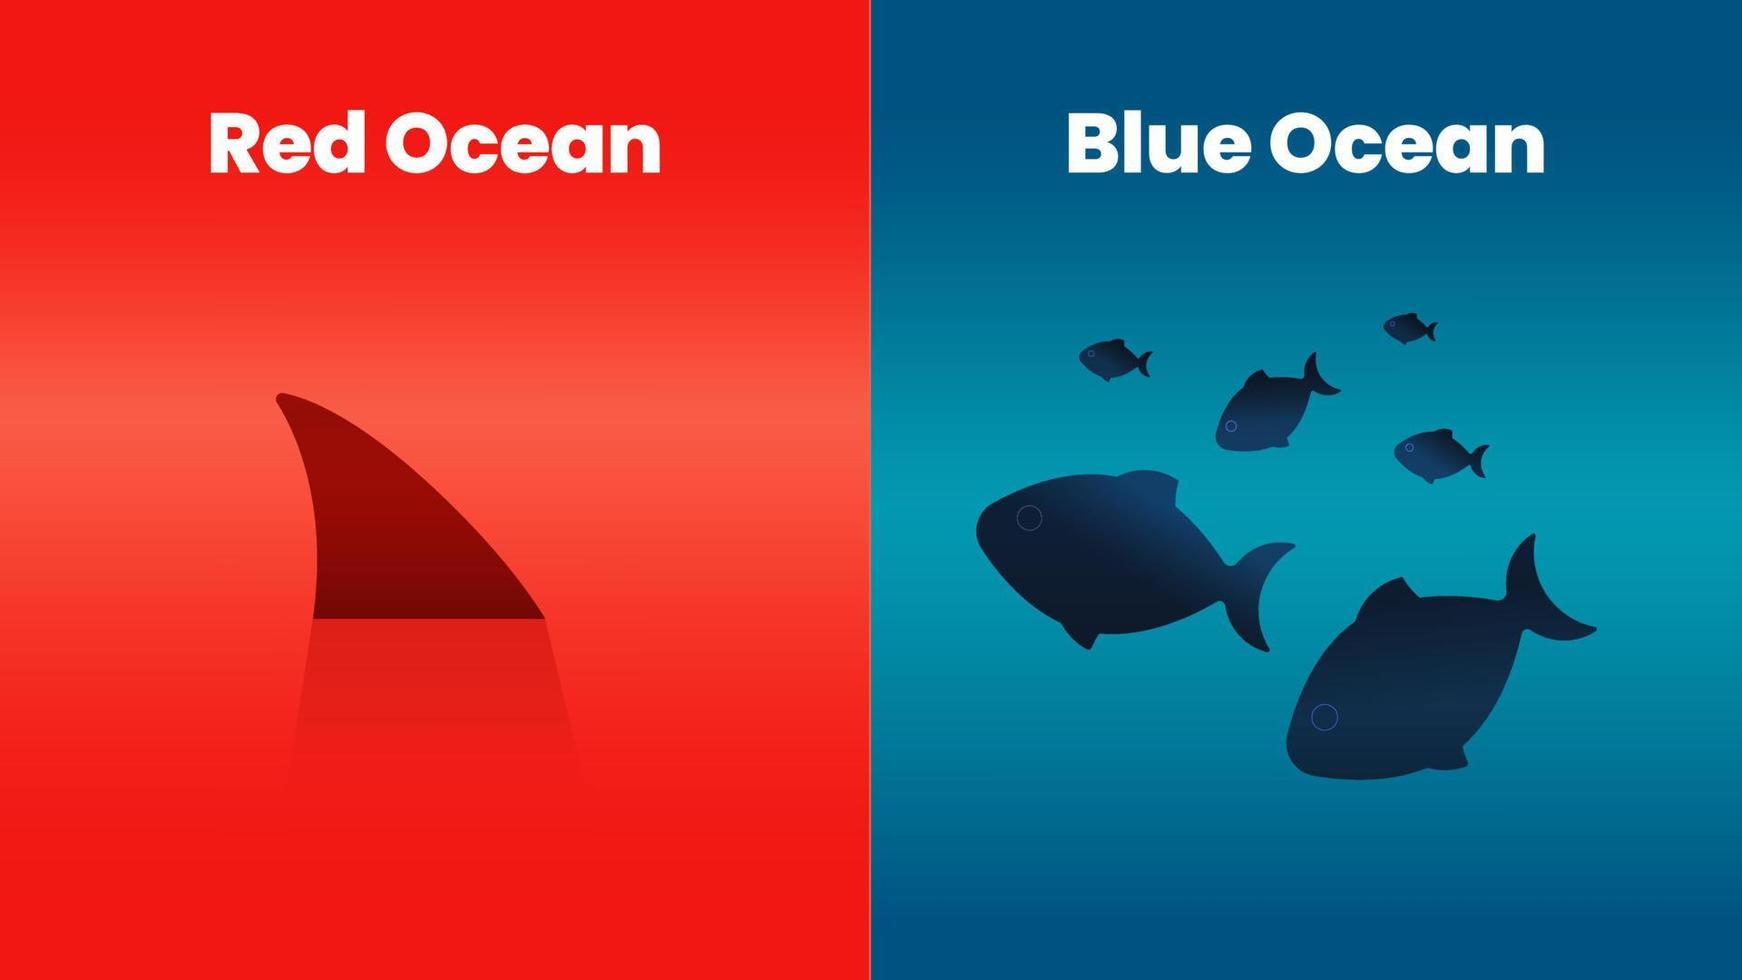 il concetto di presentazione della strategia dell'oceano blu è un elemento infografico vettoriale del marketing. lo squalo rosso e il mare hanno una sanguinosa concorrenza di massa e la riva blu è un mercato ricco e di nicchia